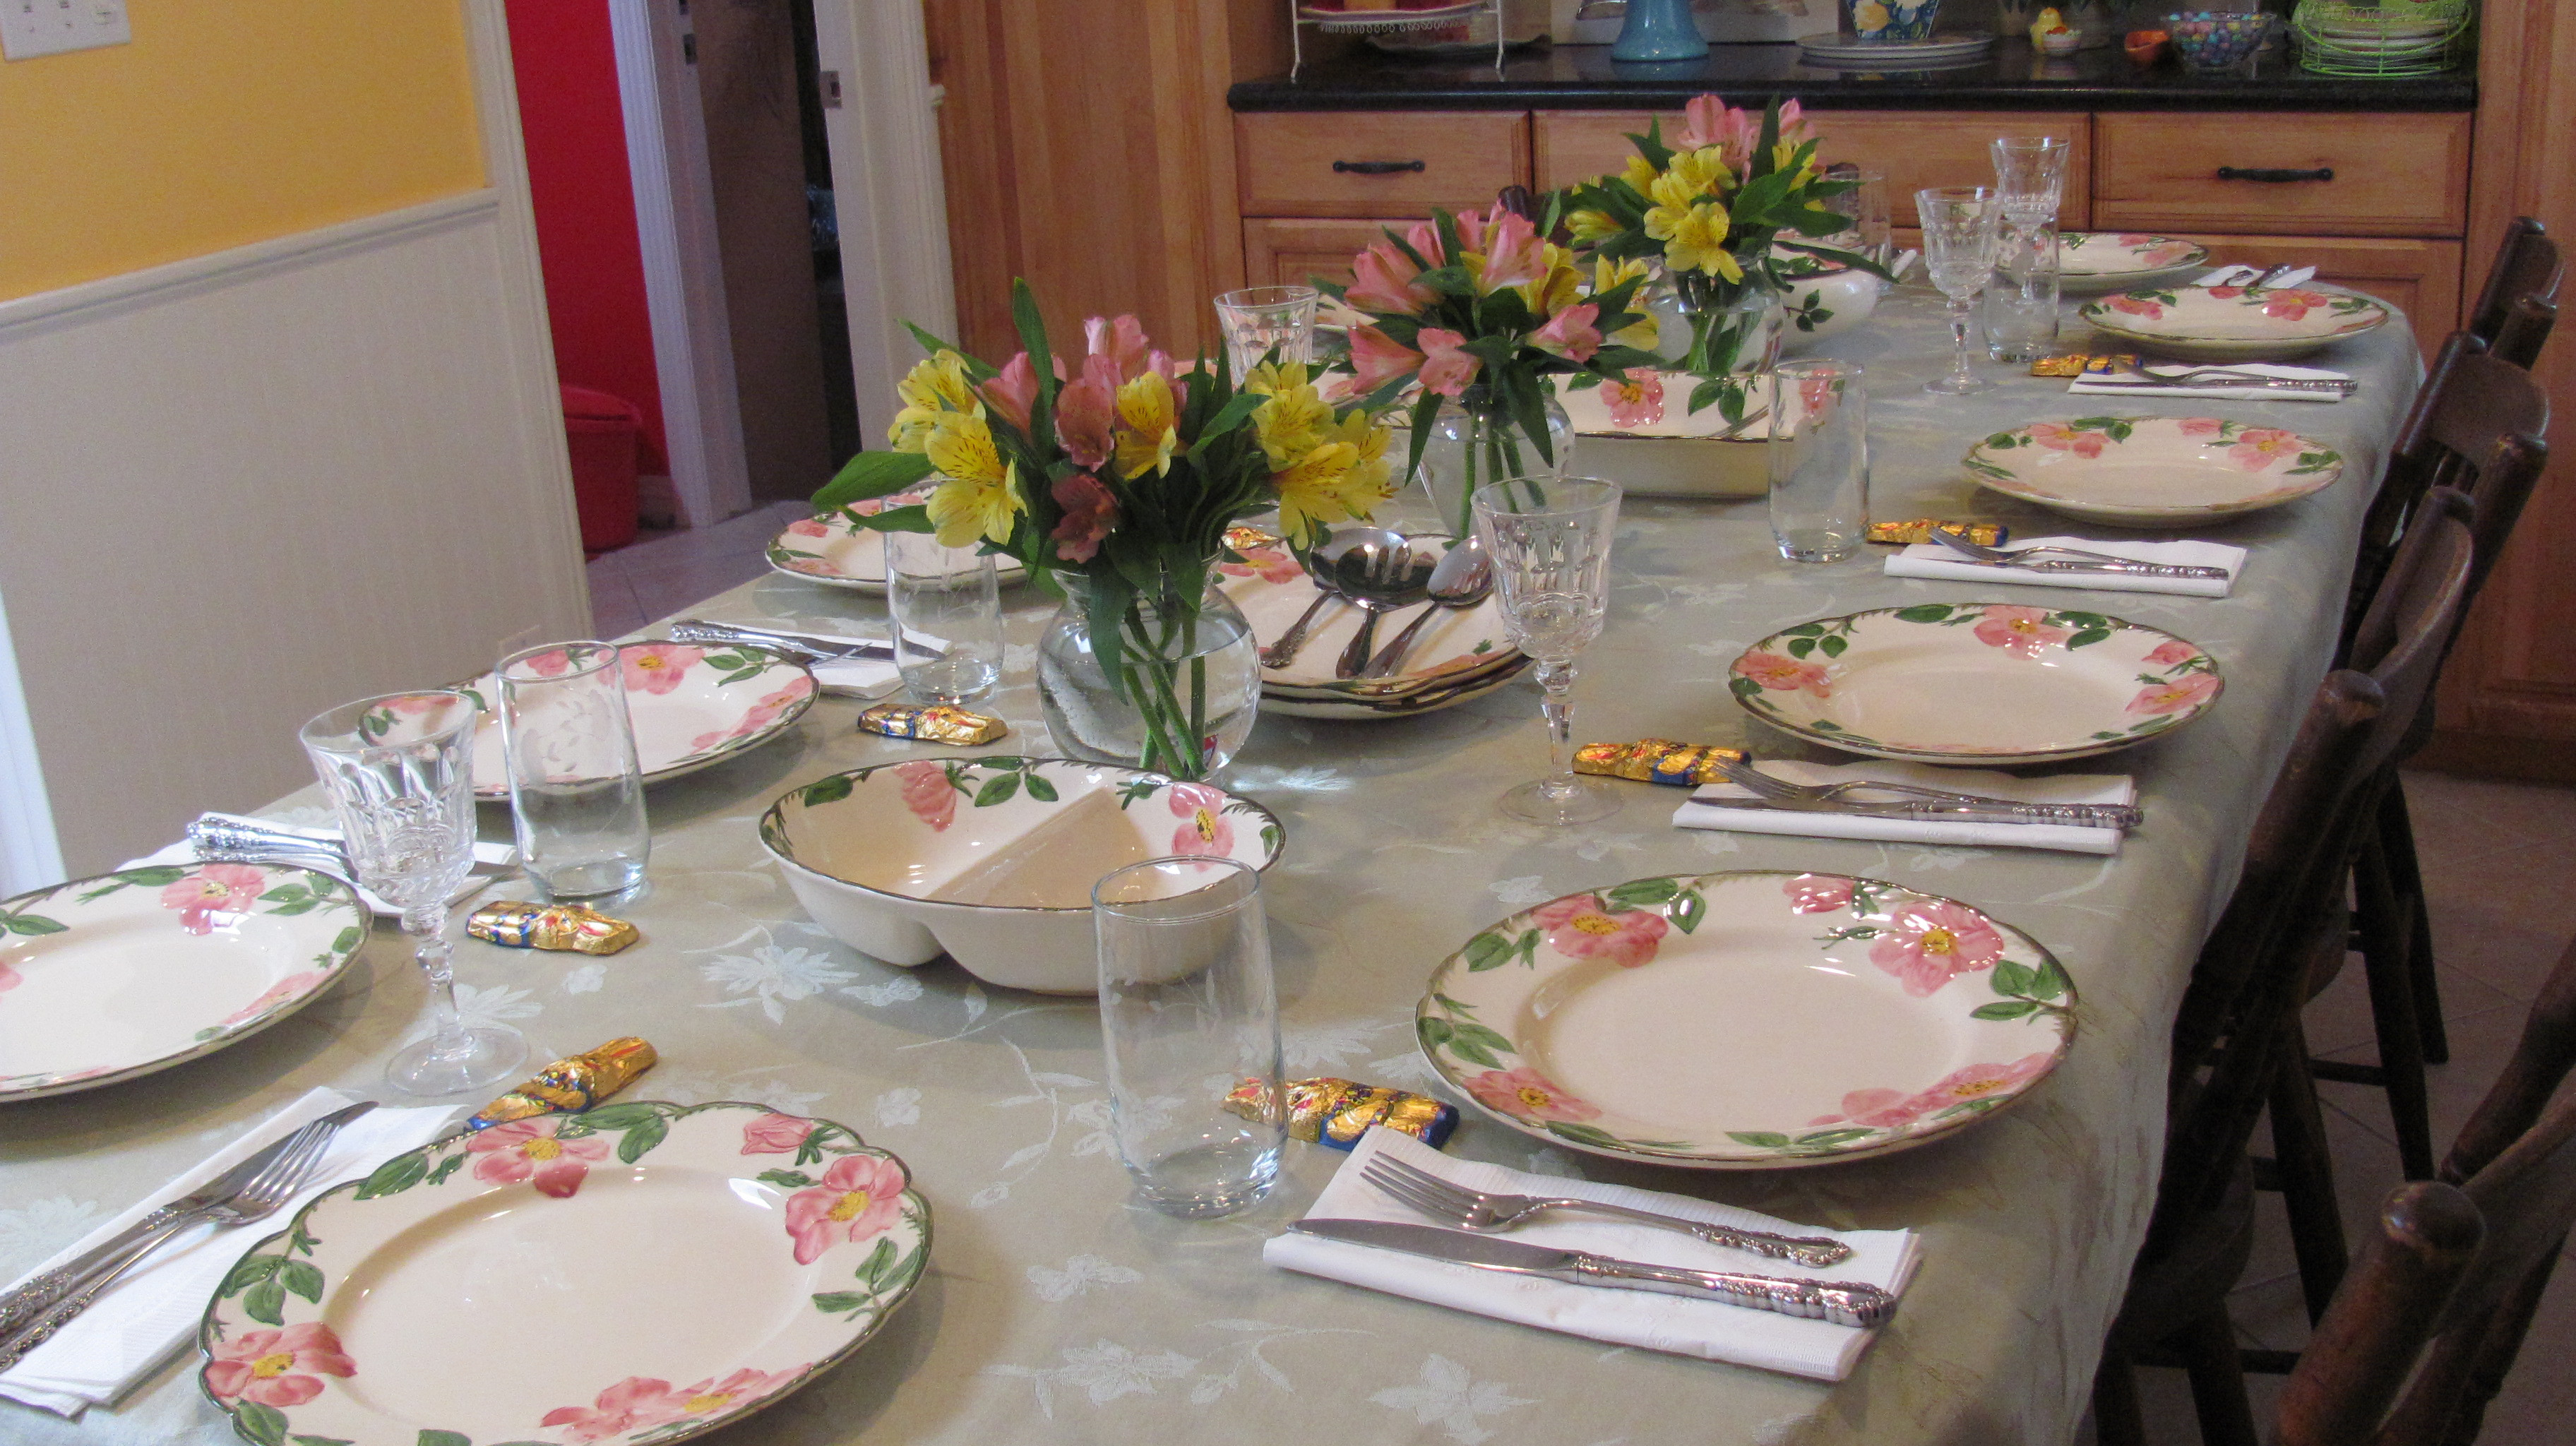 Easter Dinner Table Settings
 Easter